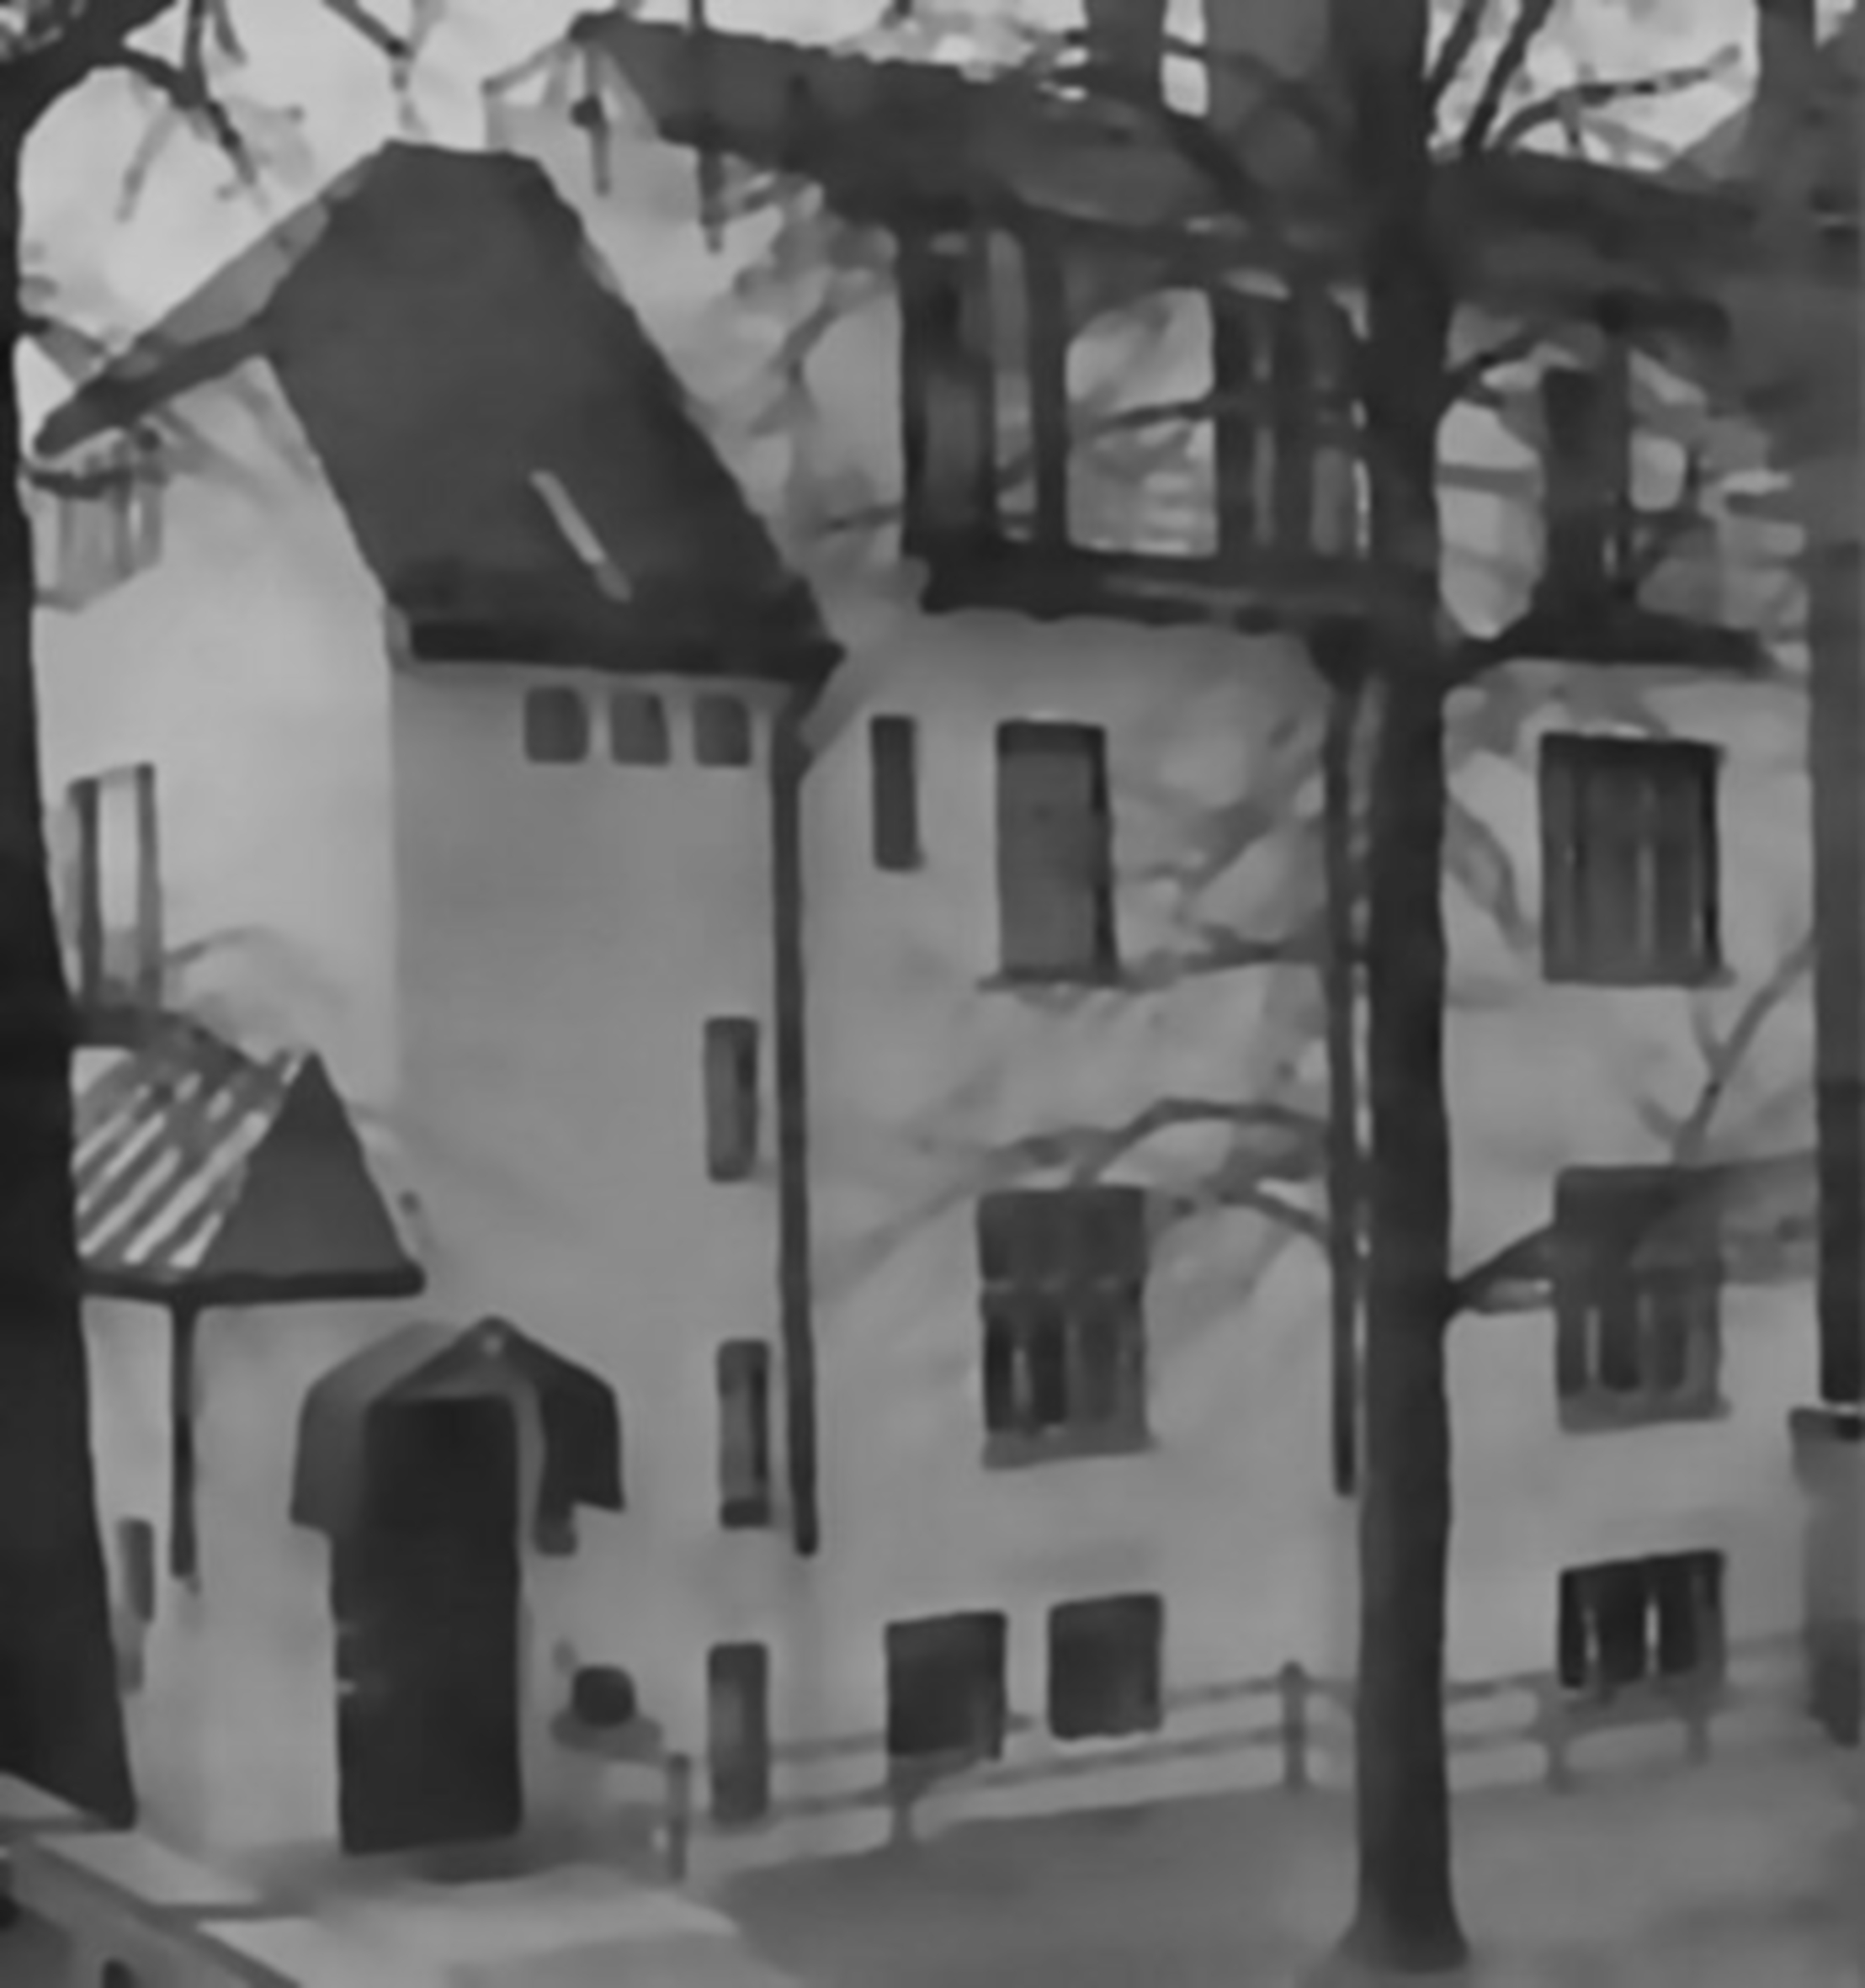 München, Franz-Joseph-Strasse 13b, in unterer Stockwerkebene lebten die Geschwister Scholl, Privatedition